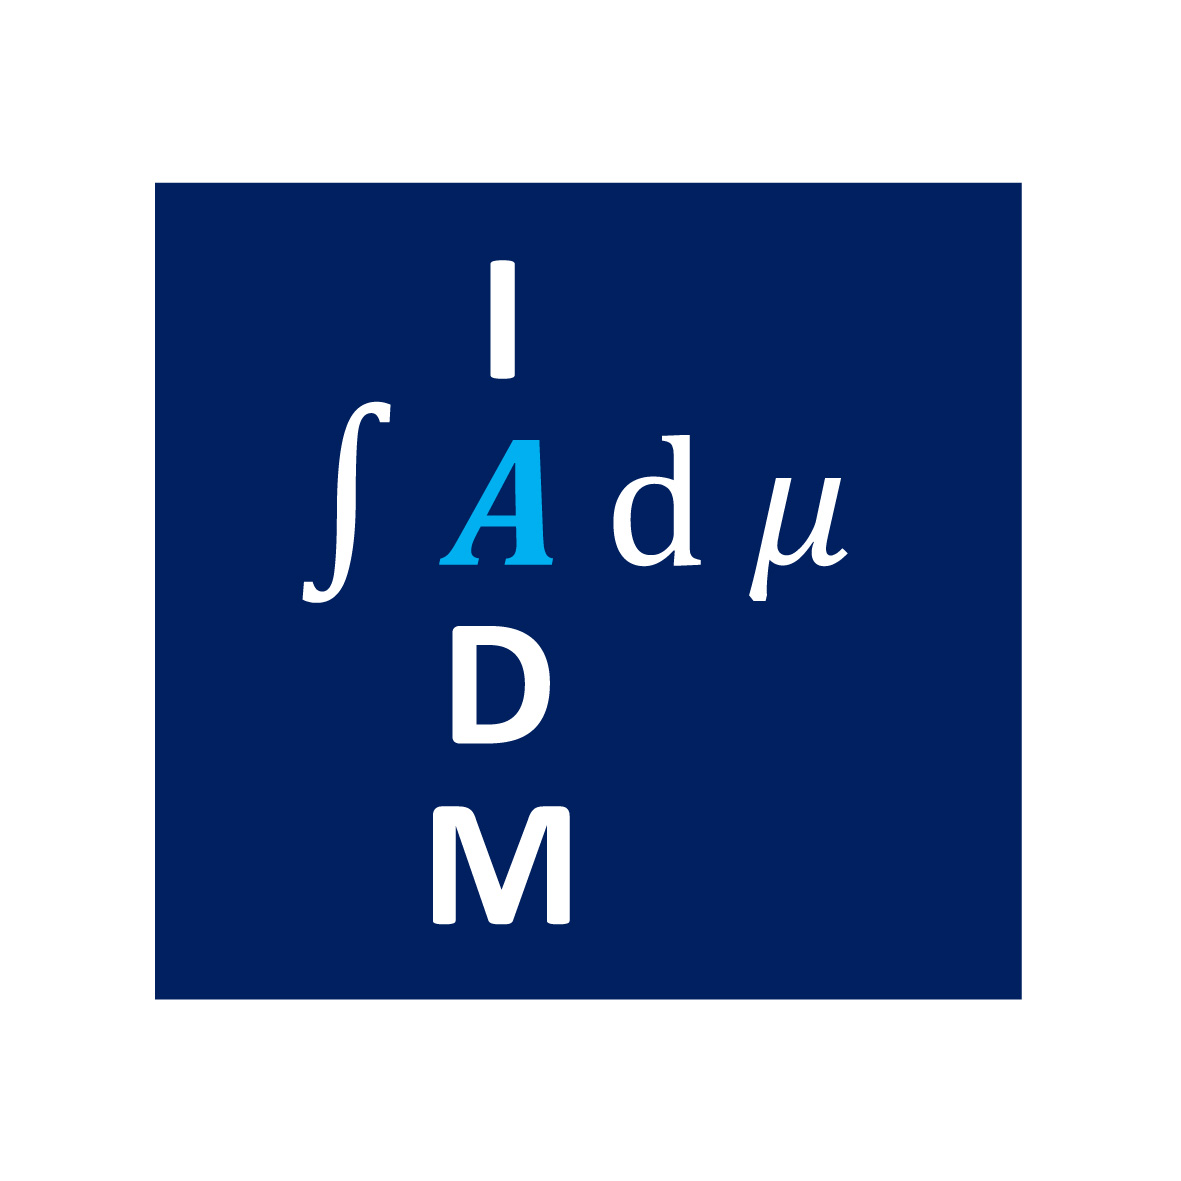 Blaues Logo des Instituts für Analysis, Dynamik und Modellierung mit weißen Buchstaben 